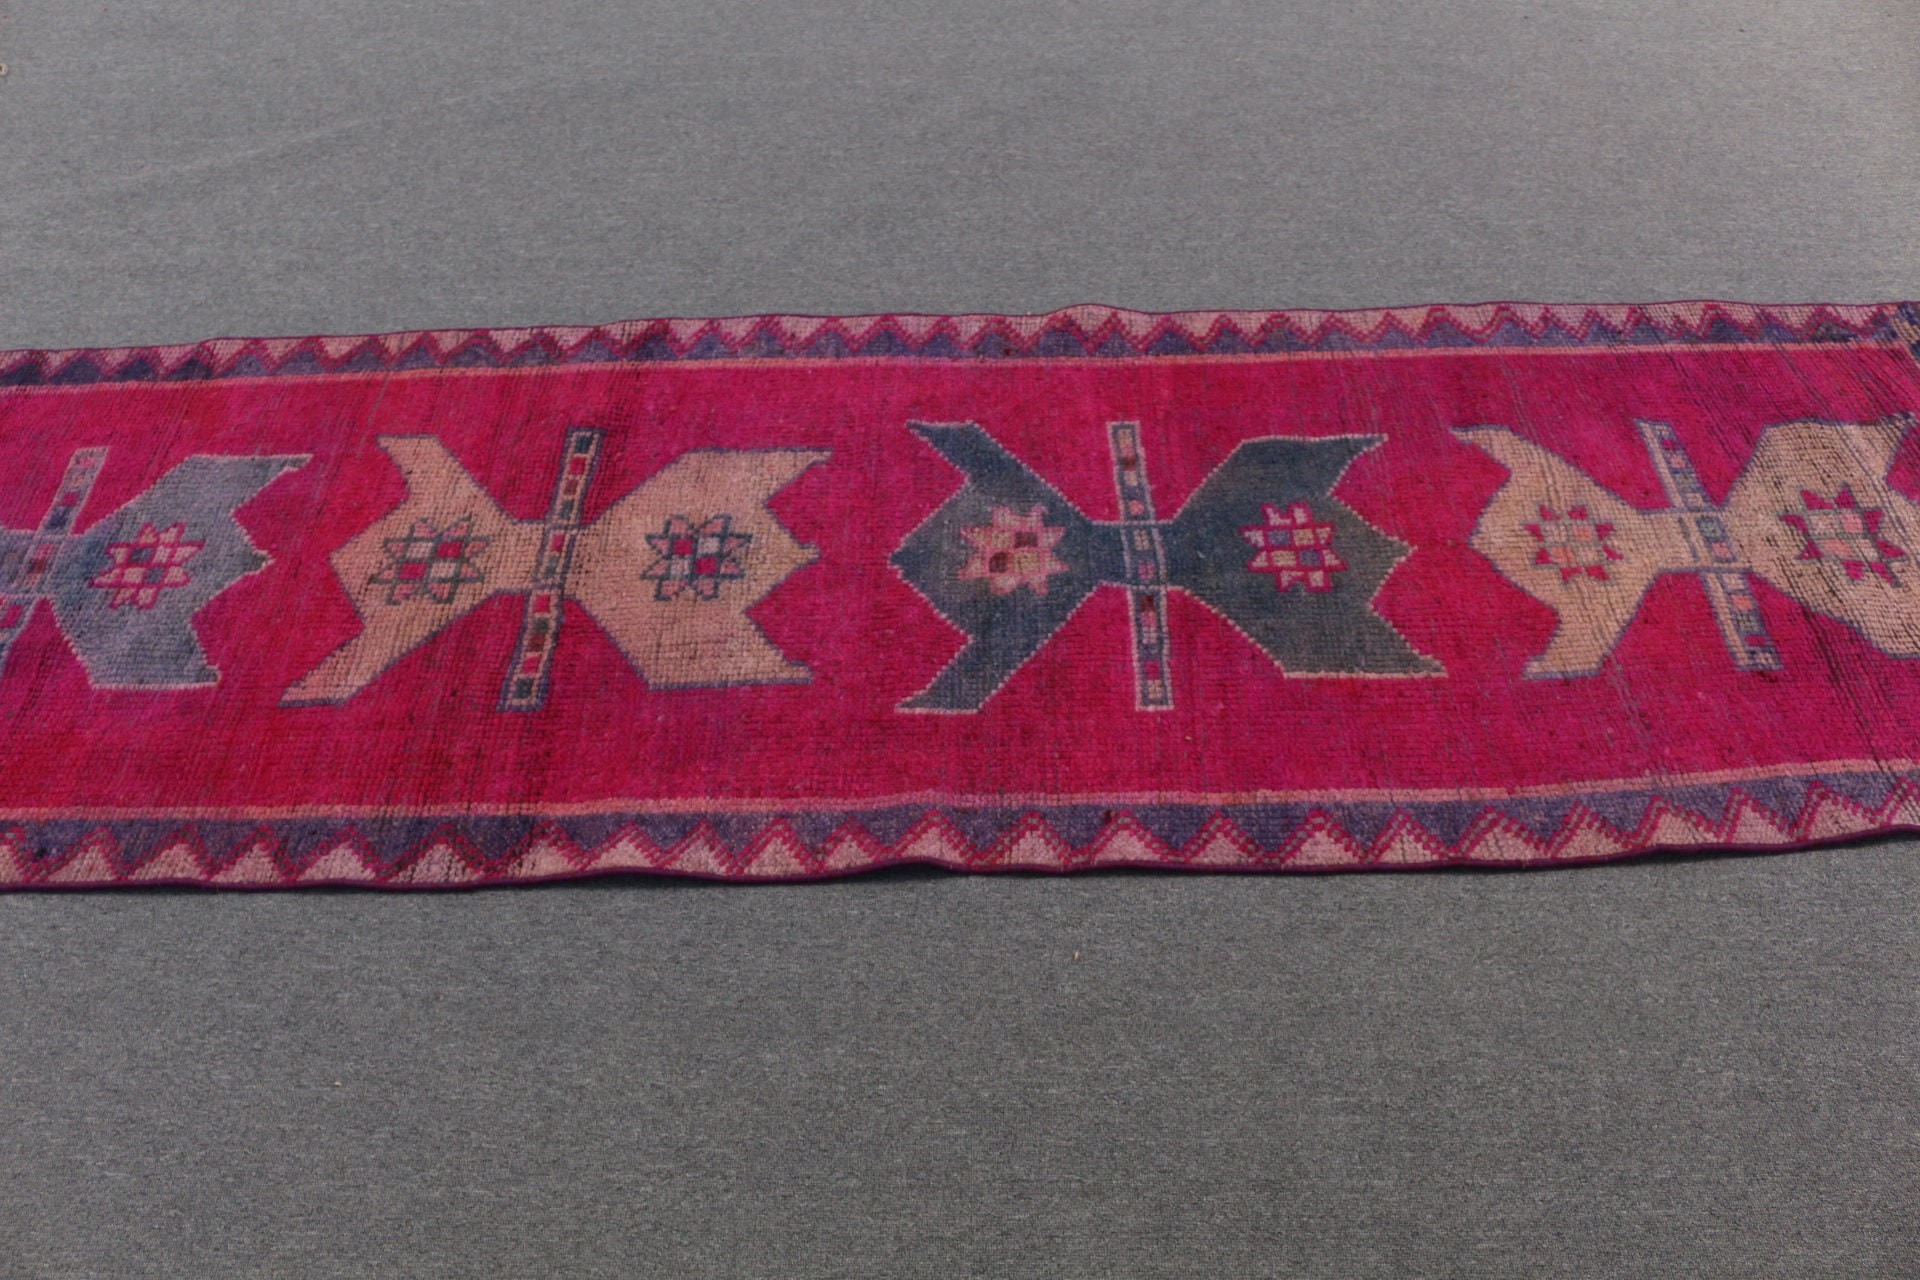 Vintage Rug, Pink Oriental Rug, Oushak Rugs, Turkish Rugs, Stair Rug, Rugs for Stair, Hallway Rug, 2.9x10 ft Runner Rug